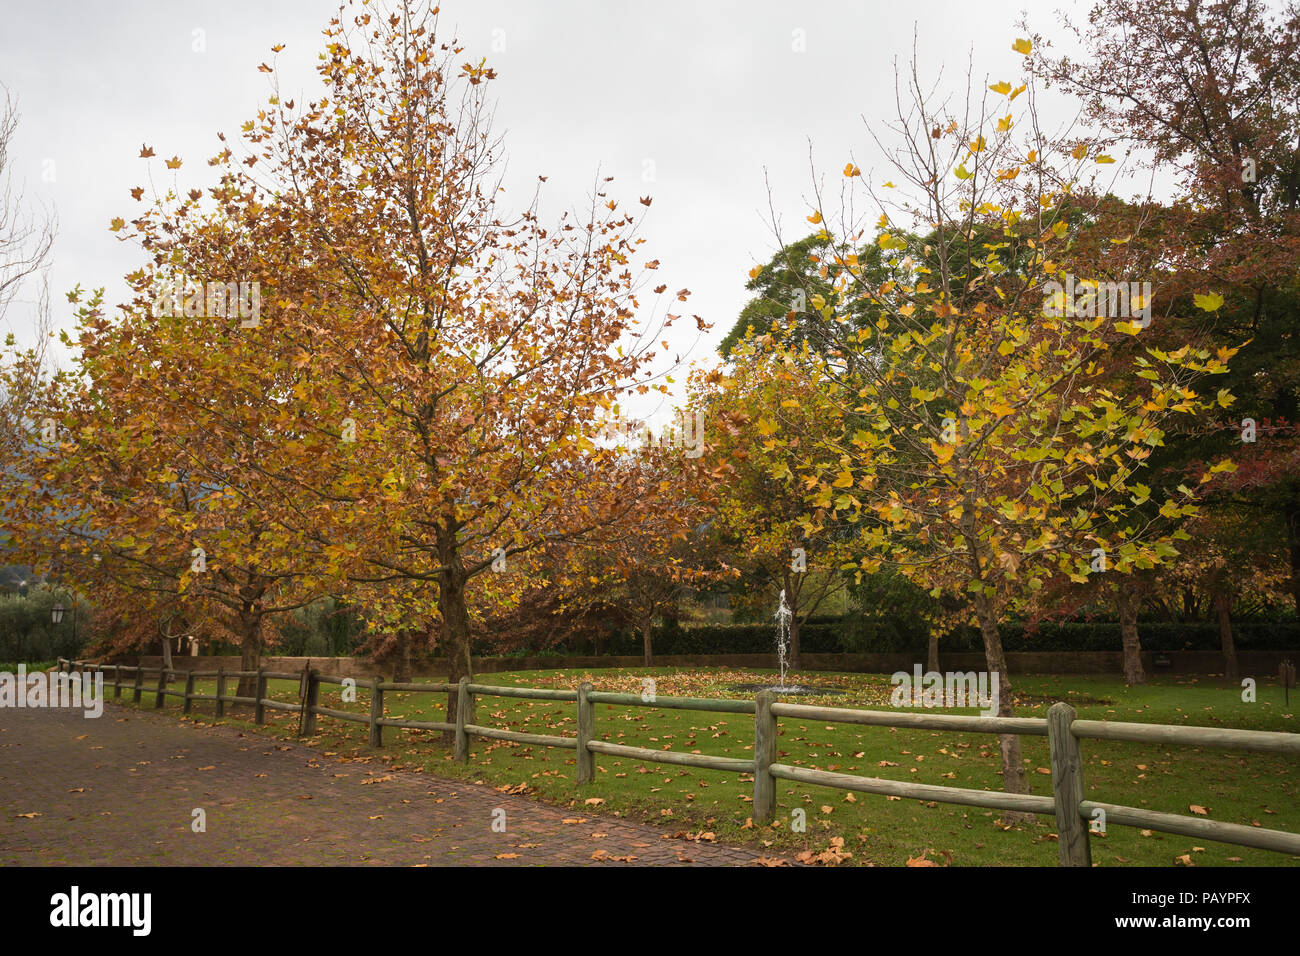 Herbst oder Fallen garten Szene auf einem grauen bewölkten Tag mit Bäumen und Rasen und einem kleinen Teich und Brunnen durch Ziegelstein Auffahrt und einem Holzzaun umgeben Stockfoto